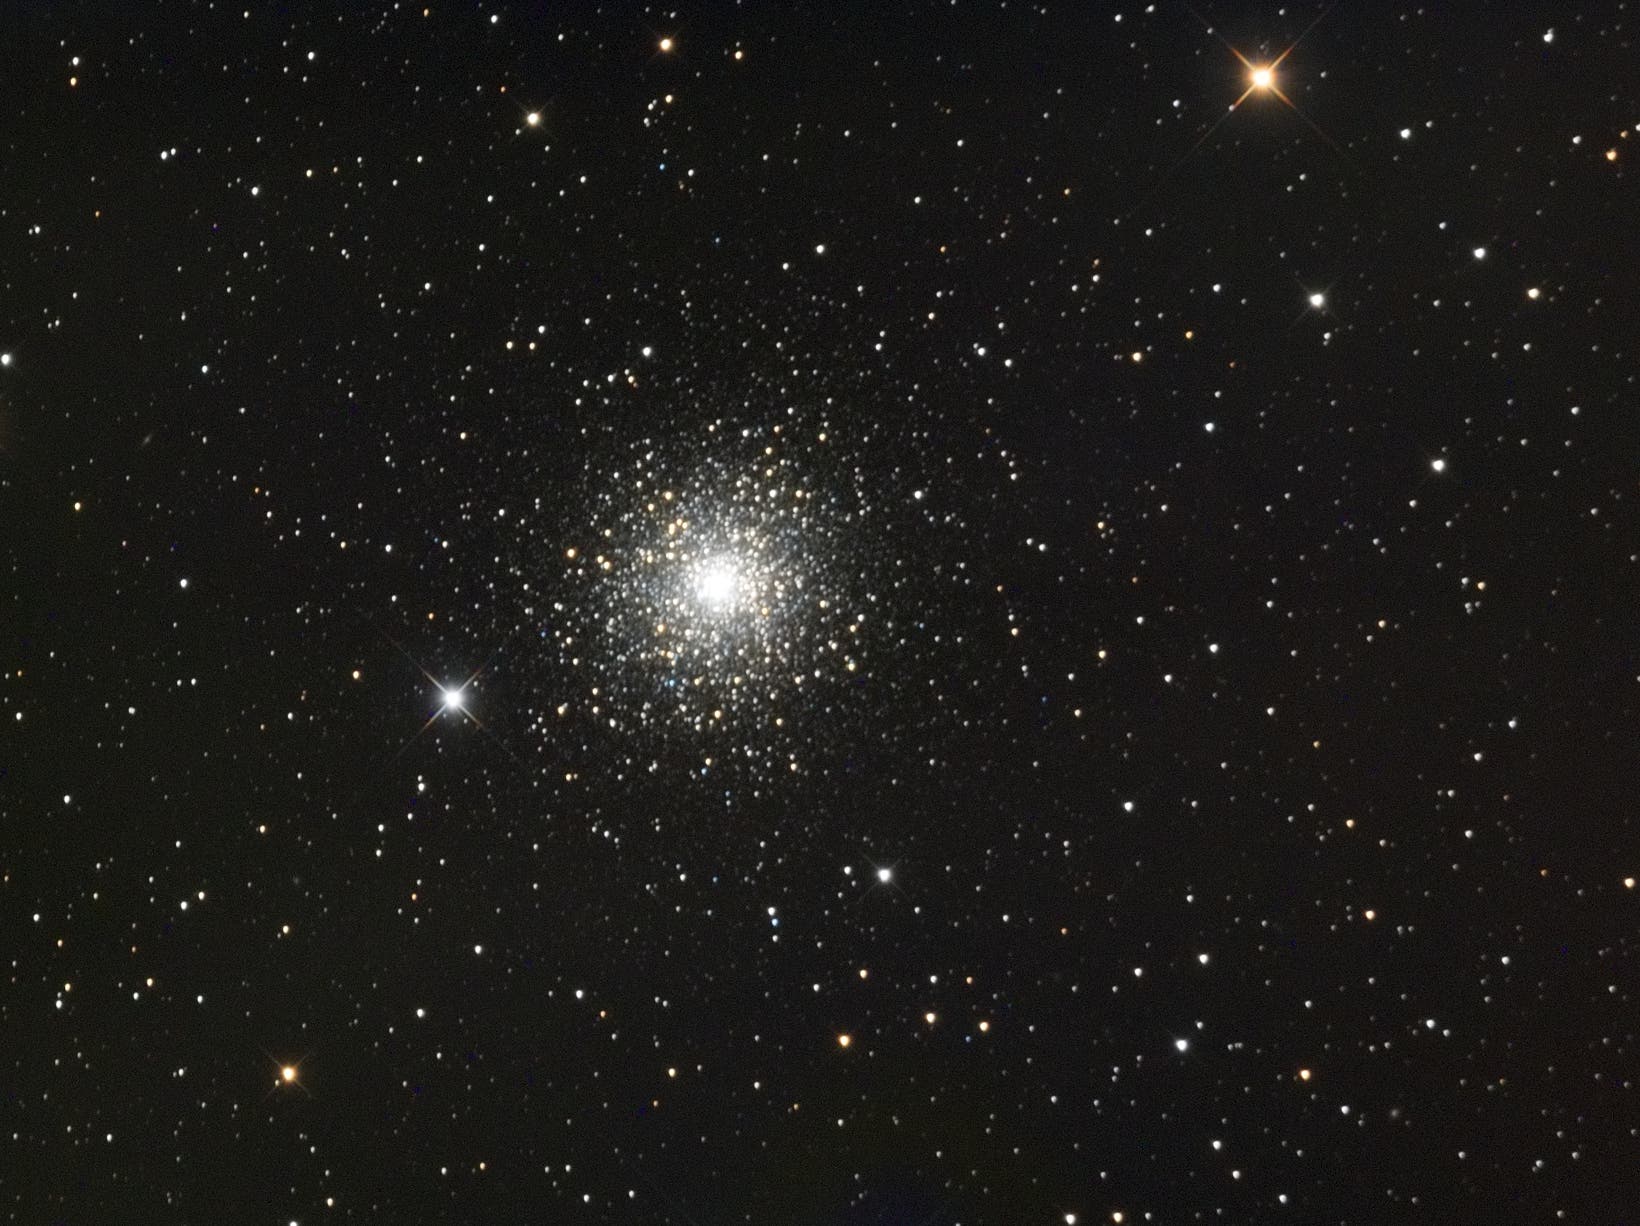 Kugelsternhaufen Messier 15 im Pegasus mit Planetarischen Nebel Pease 1